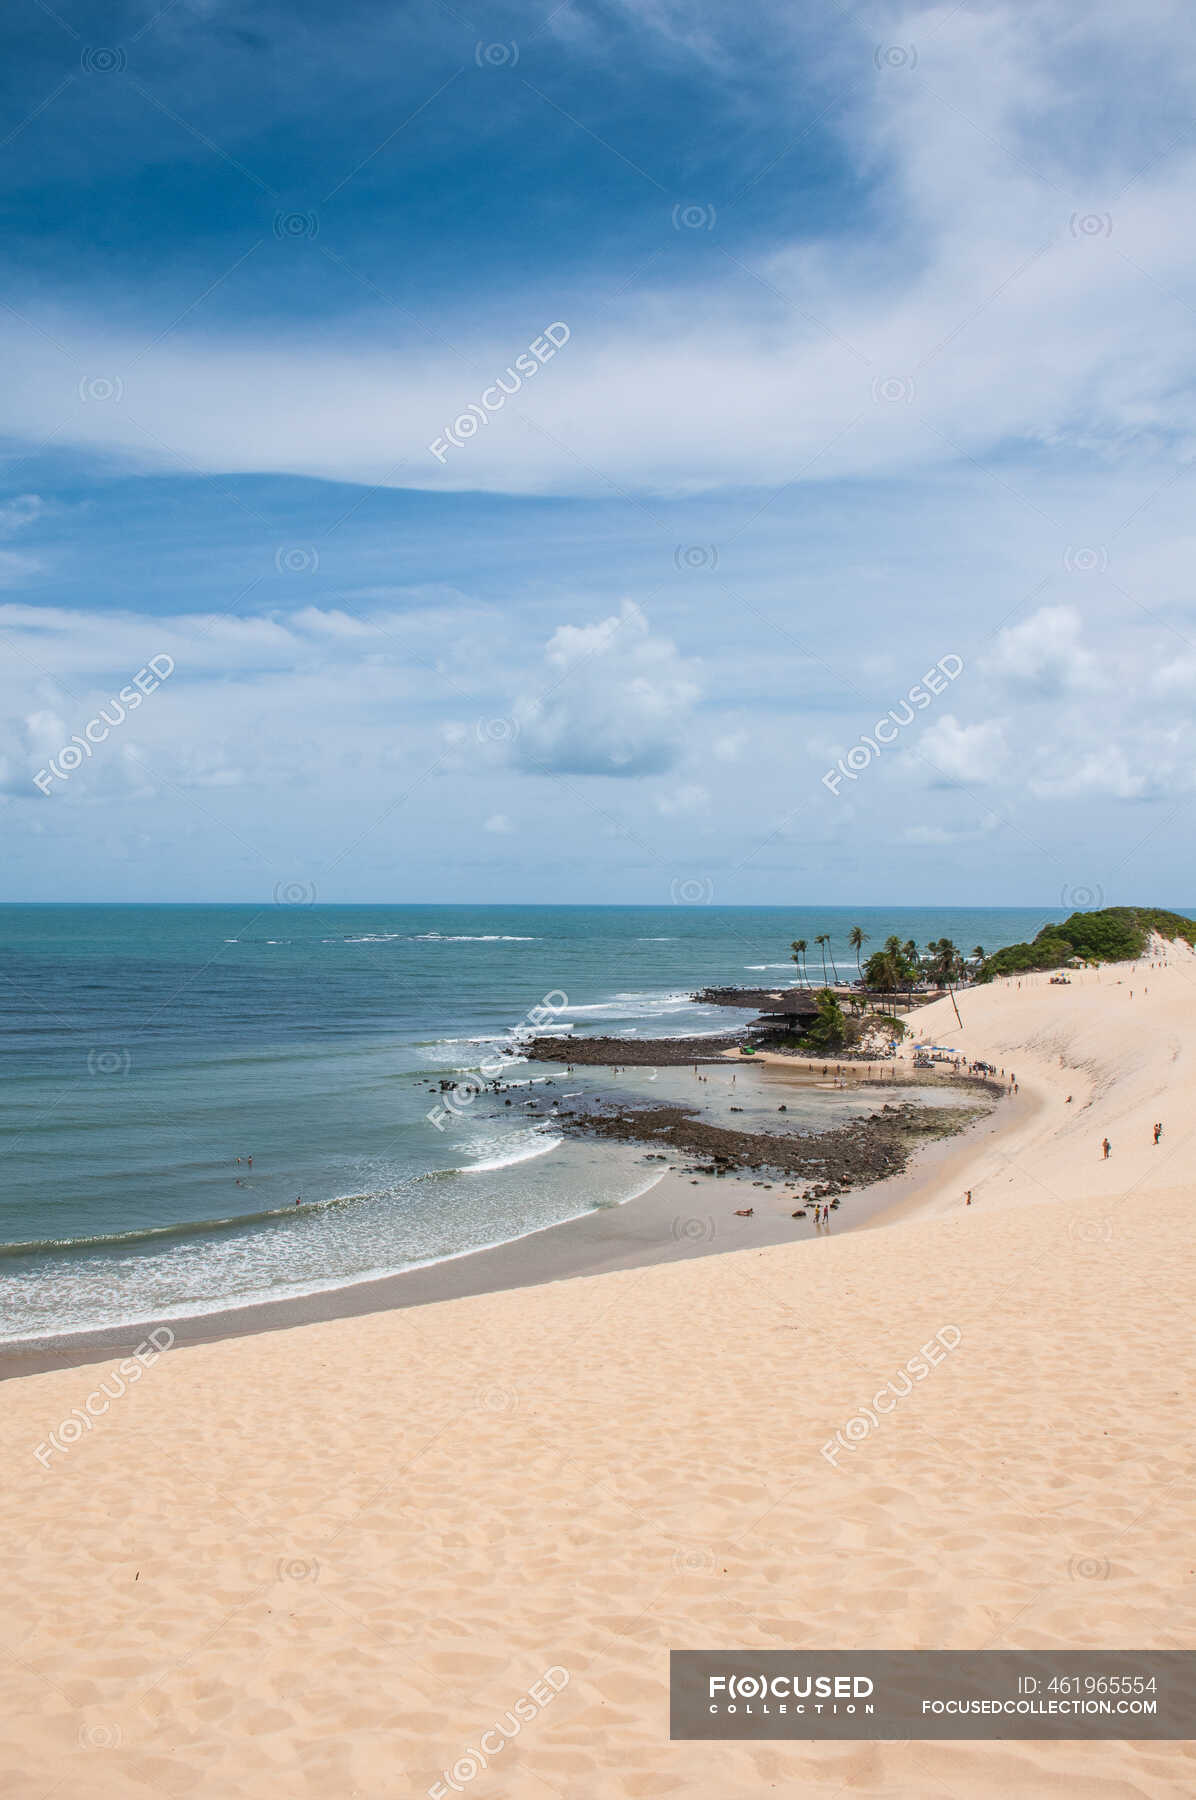 Famosas dunas de areia de Natal, Rio Grande do Norte, Brasil — duna de praia,  Ninguém - Stock Photo | #461965554